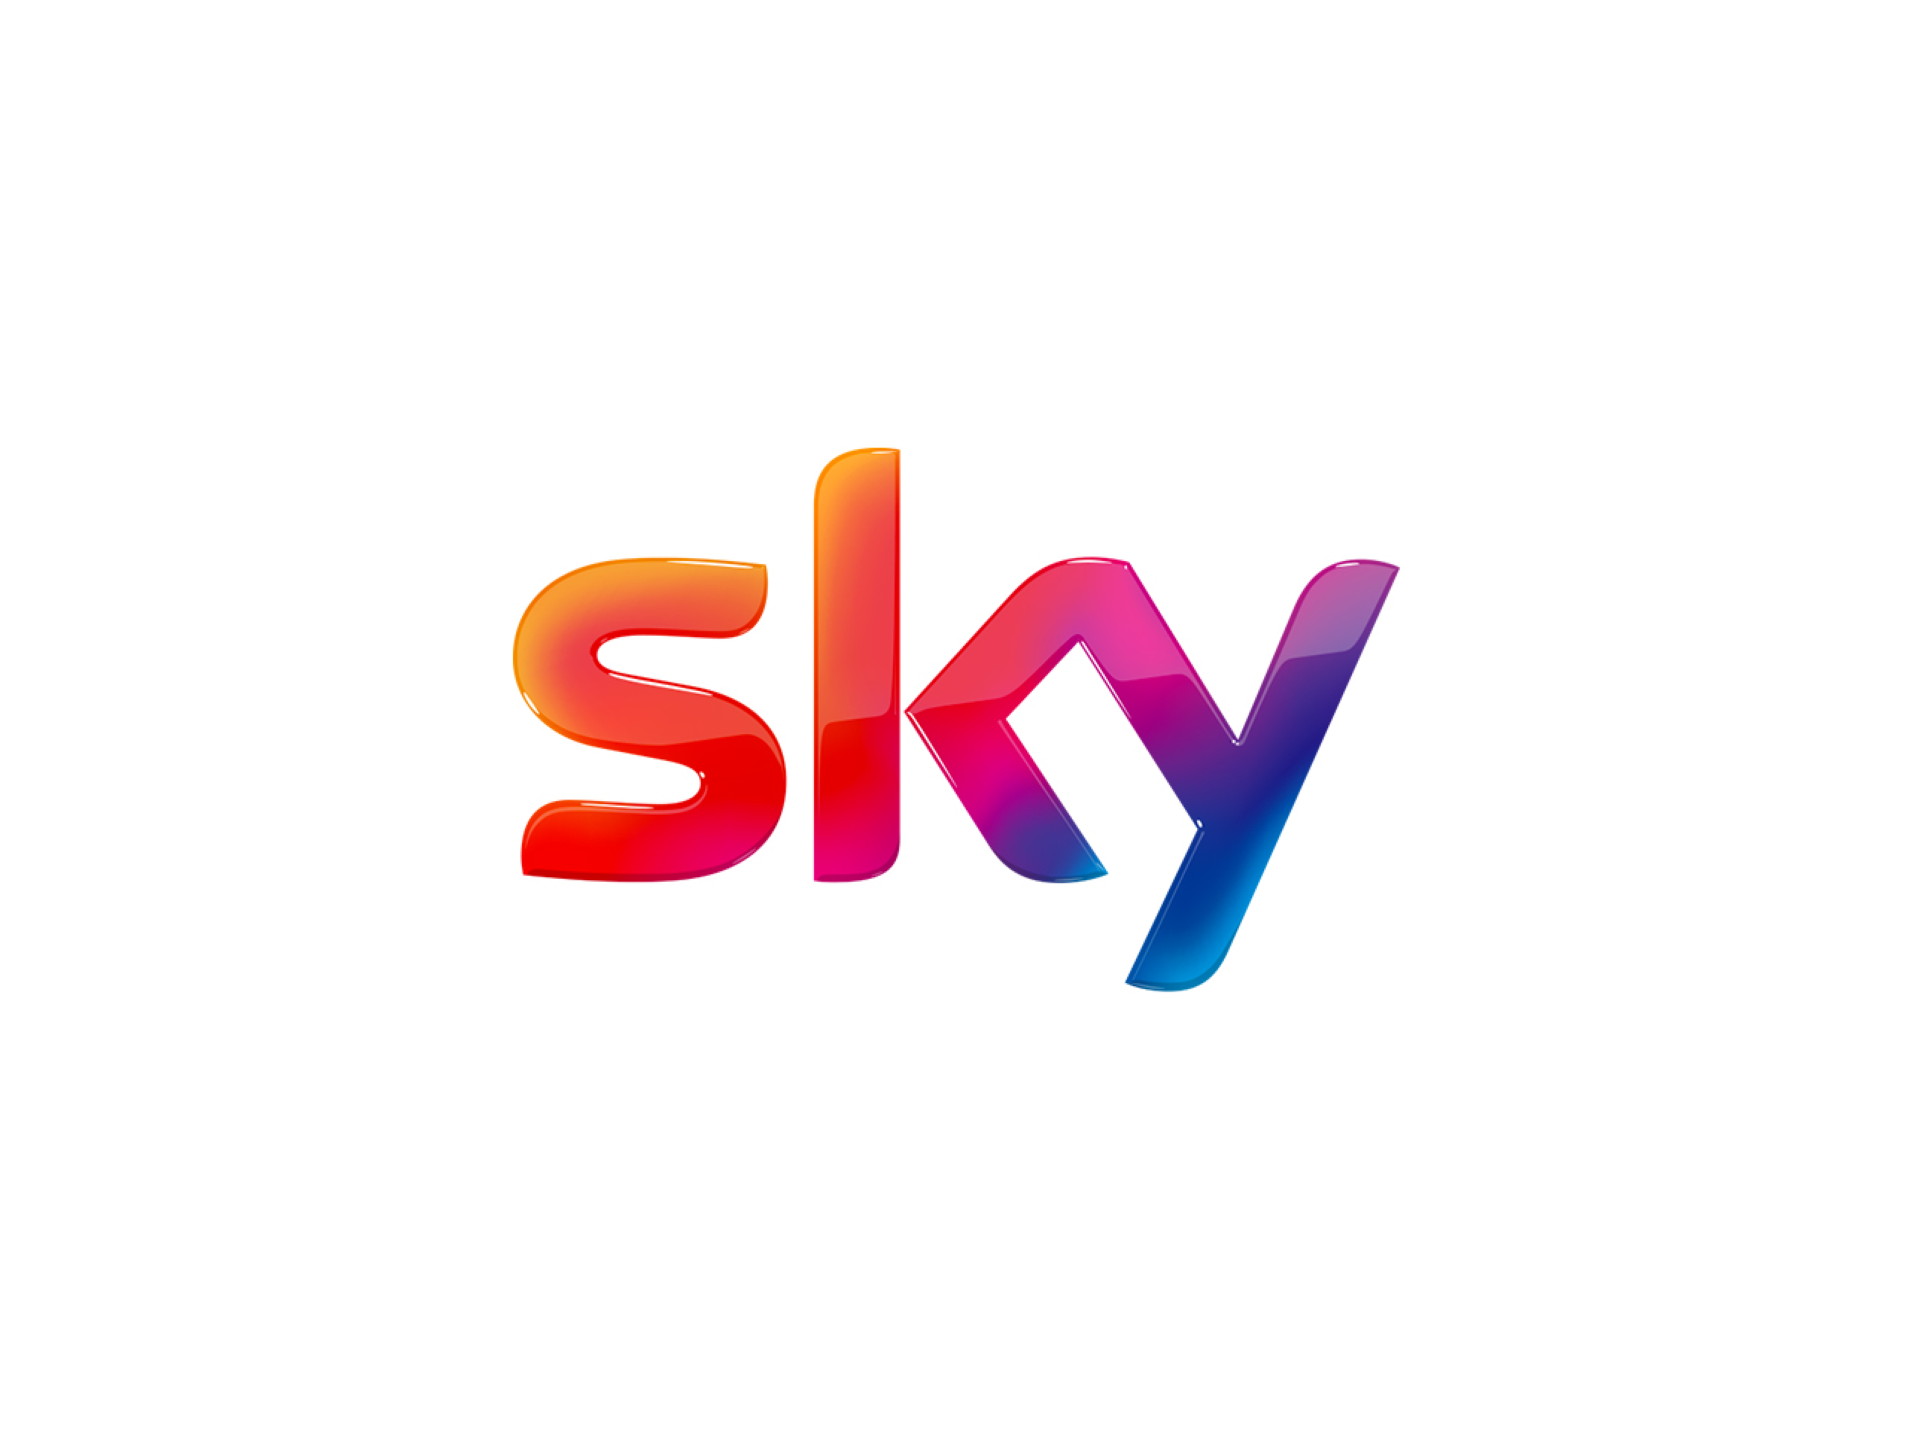 L’app Sky Go si arricchisce con nuovi canali a disposizione